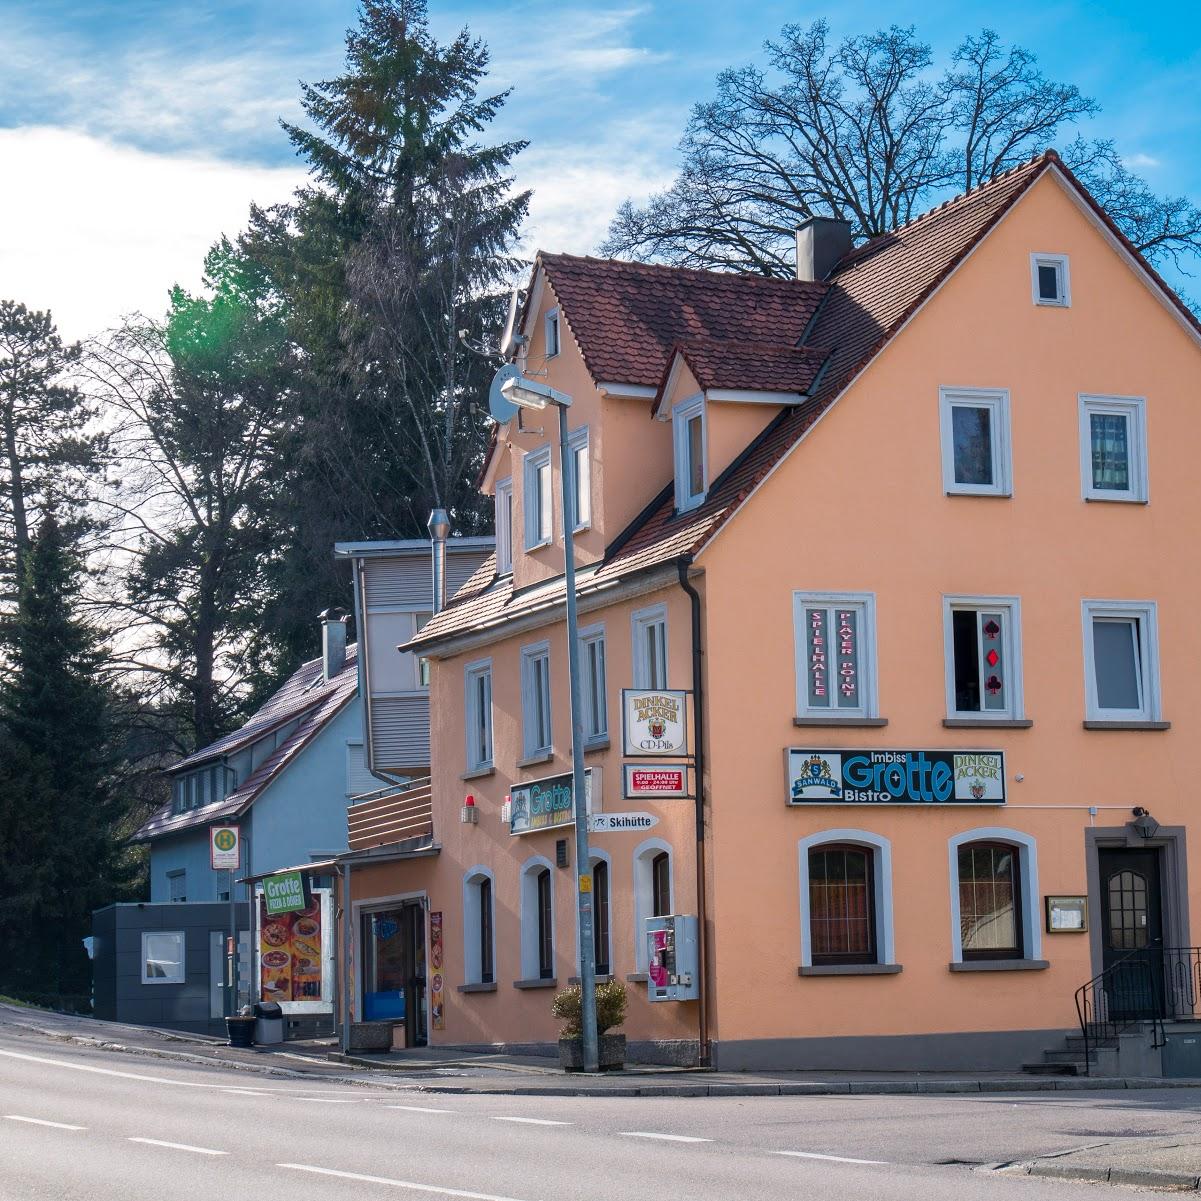 Restaurant "Zur Grotte" in  Leinzell